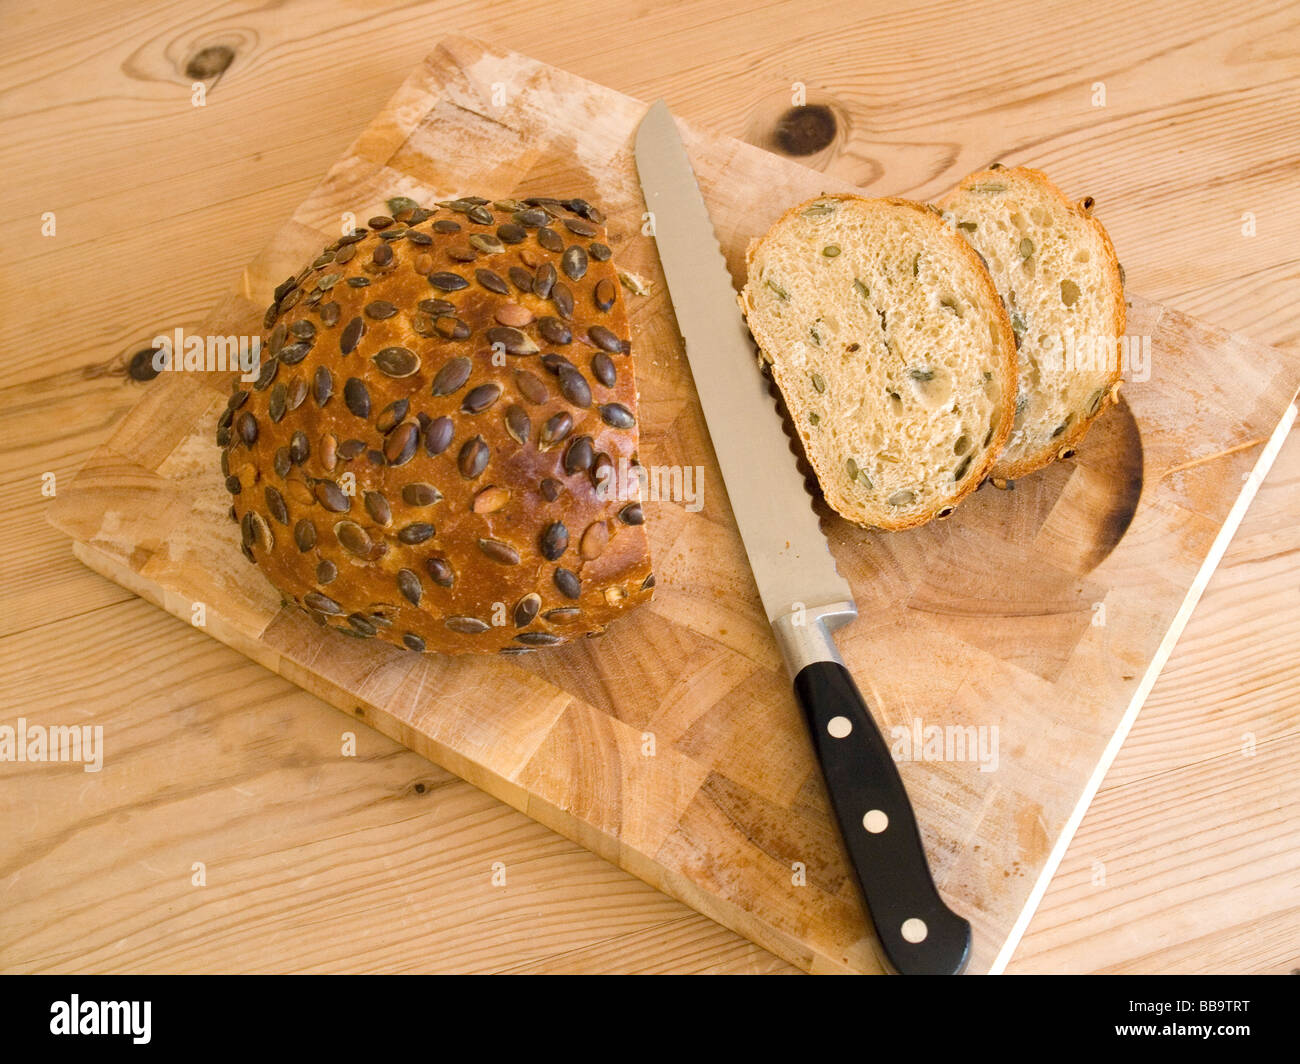 Un nouveau parquet miche de pain aux graines de citrouille cuite sur une pierre avec un couteau à pain sur une planche en bois Banque D'Images